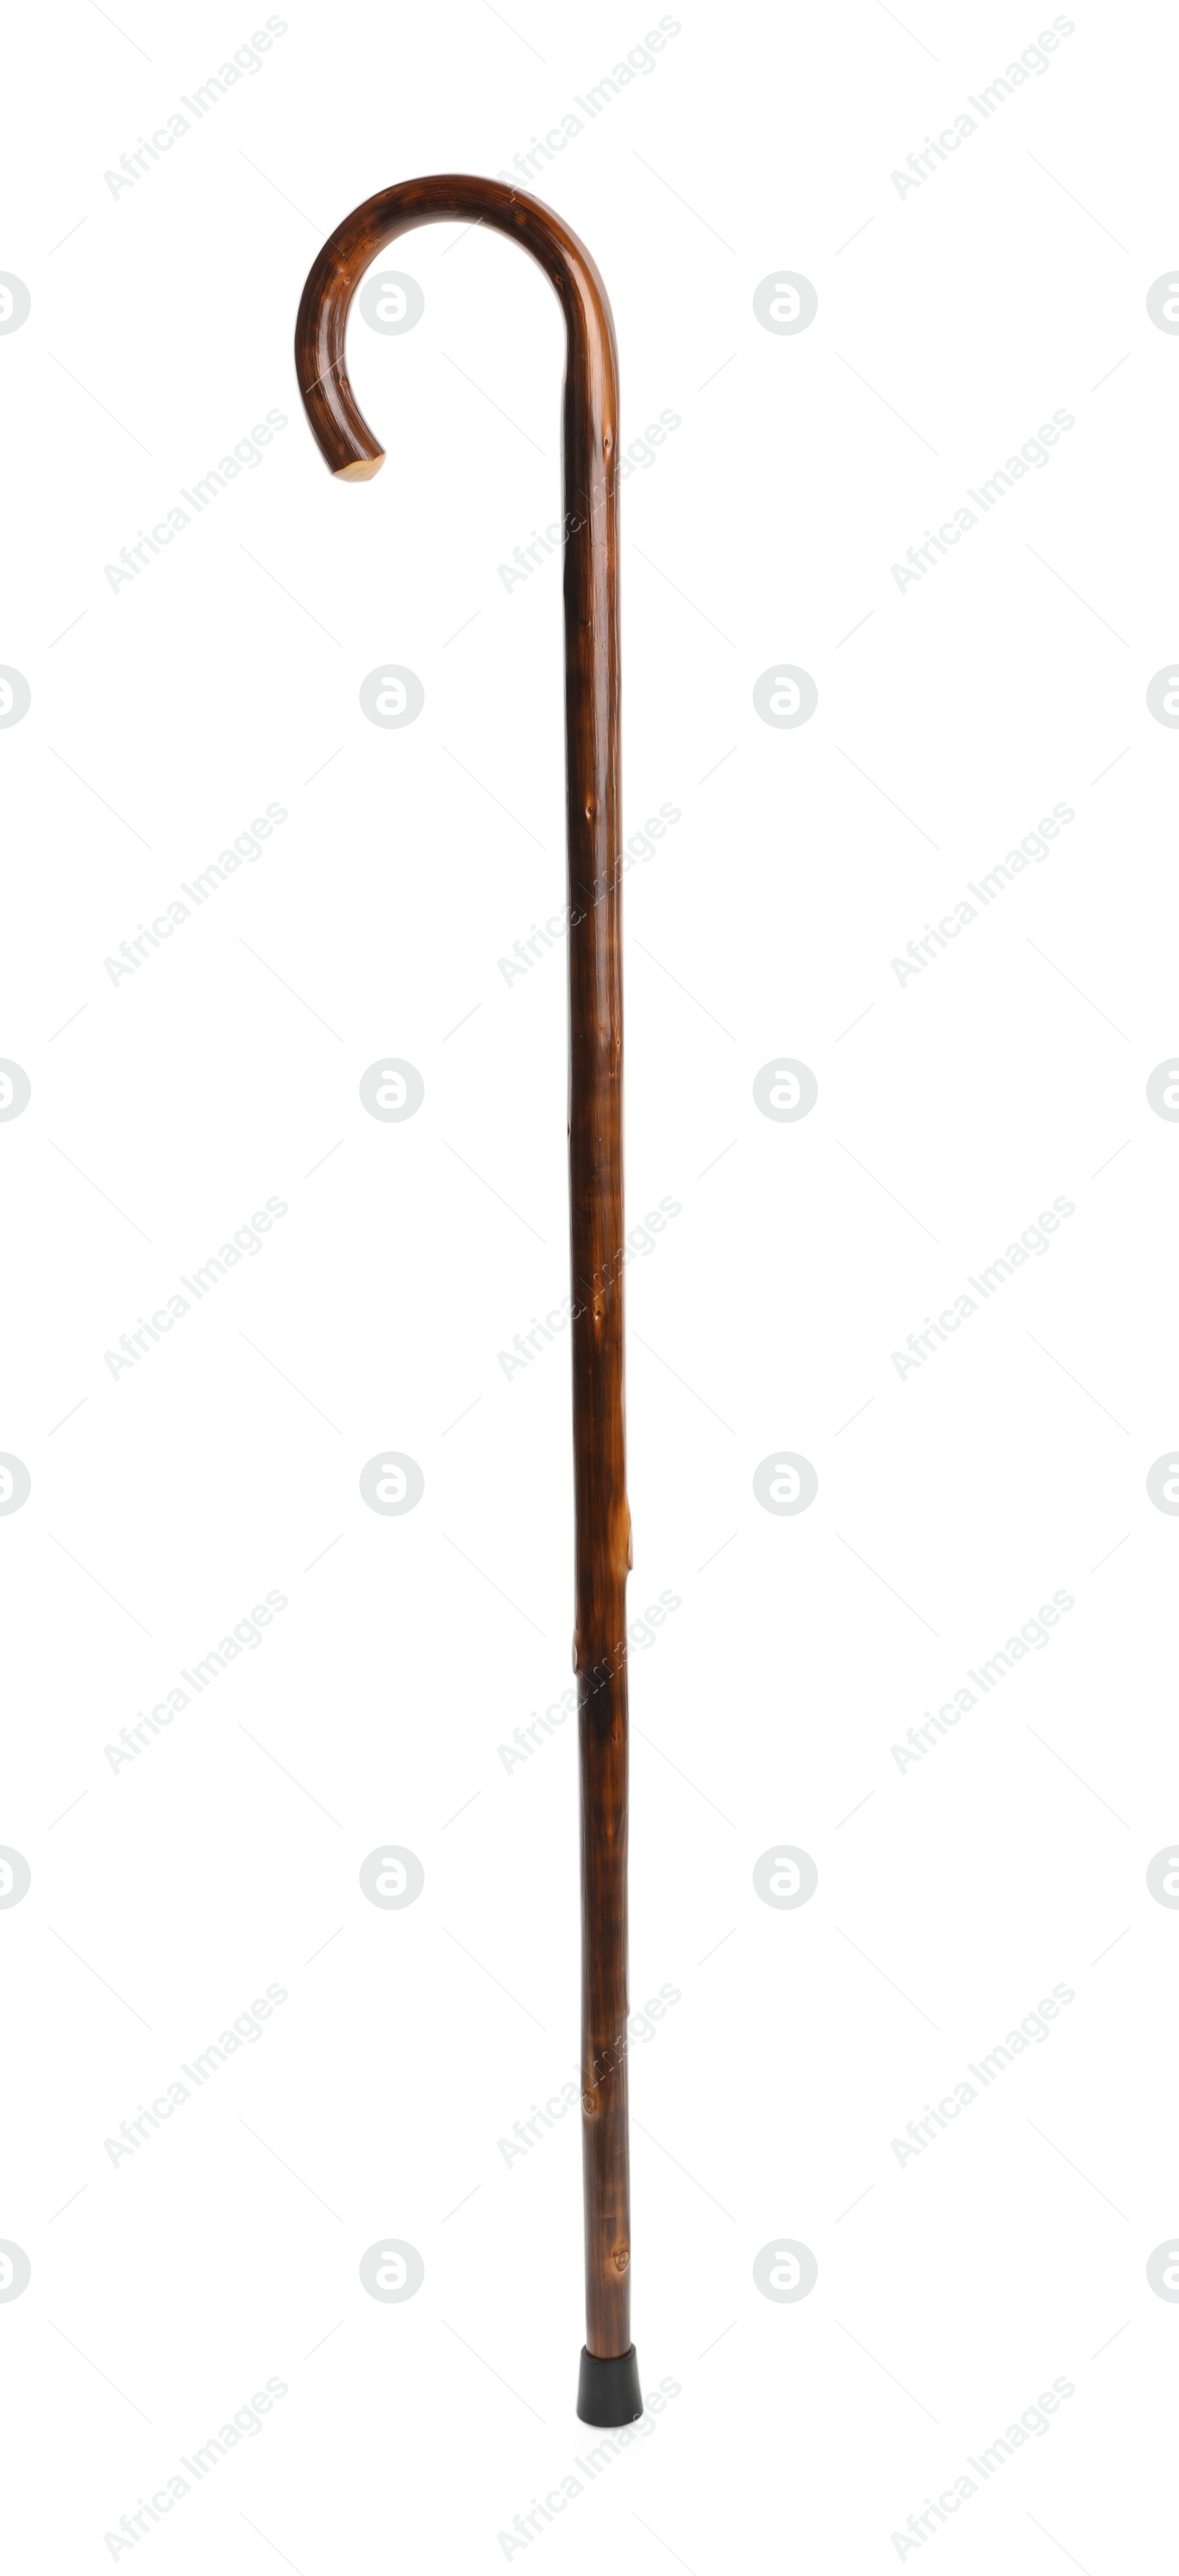 Photo of Elegant wooden walking cane isolated on white